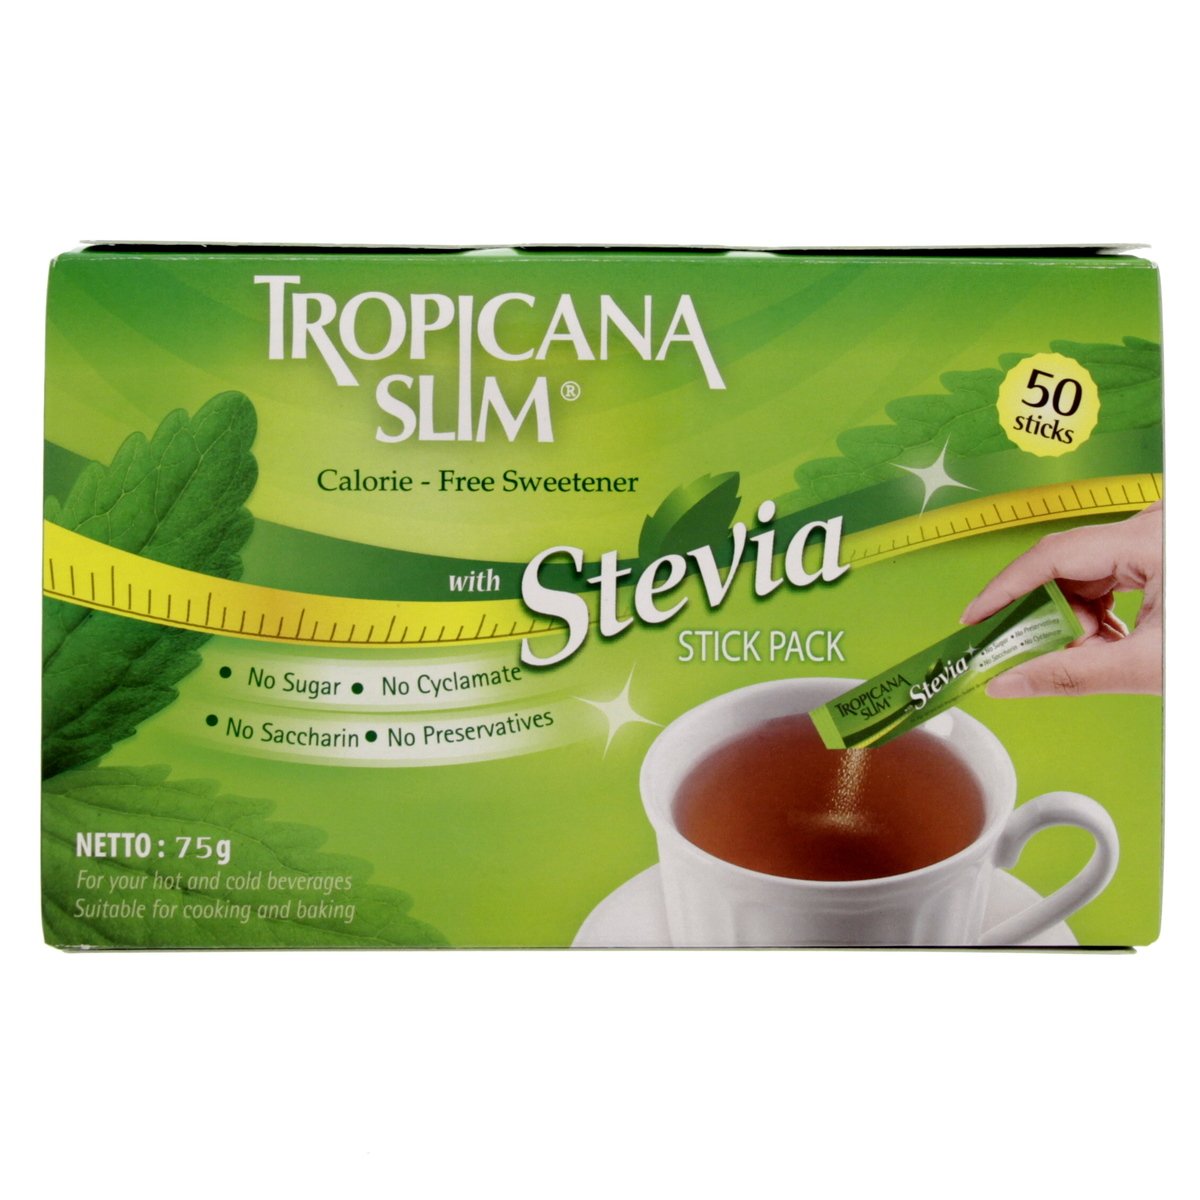 Buy Tropicana Slim Calorie Free Sweetener With Stevia Stick Pack 50 pcs Online at Best Price | Sugar | Lulu UAE in UAE